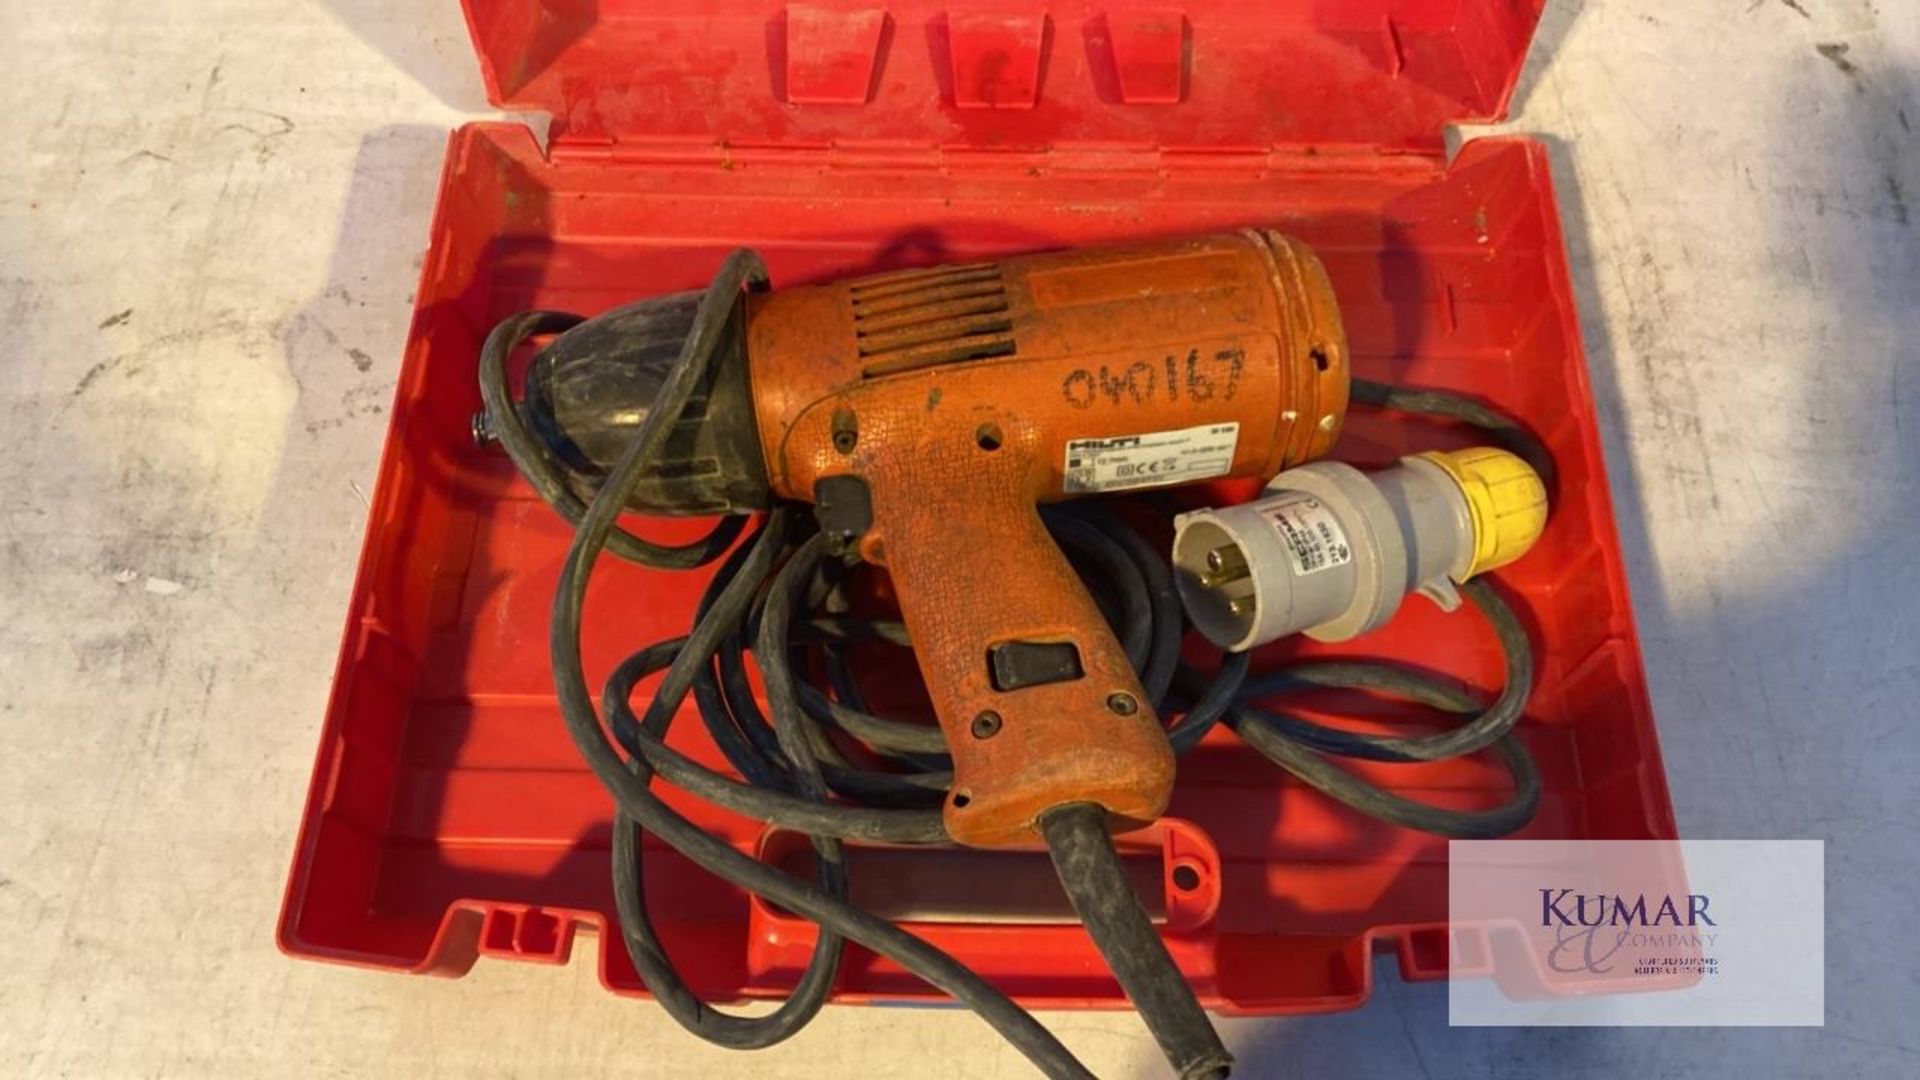 Hilti 110 Volt 1/2" Impact Wrench, 470 Watt, with Carry Case - Bild 2 aus 4